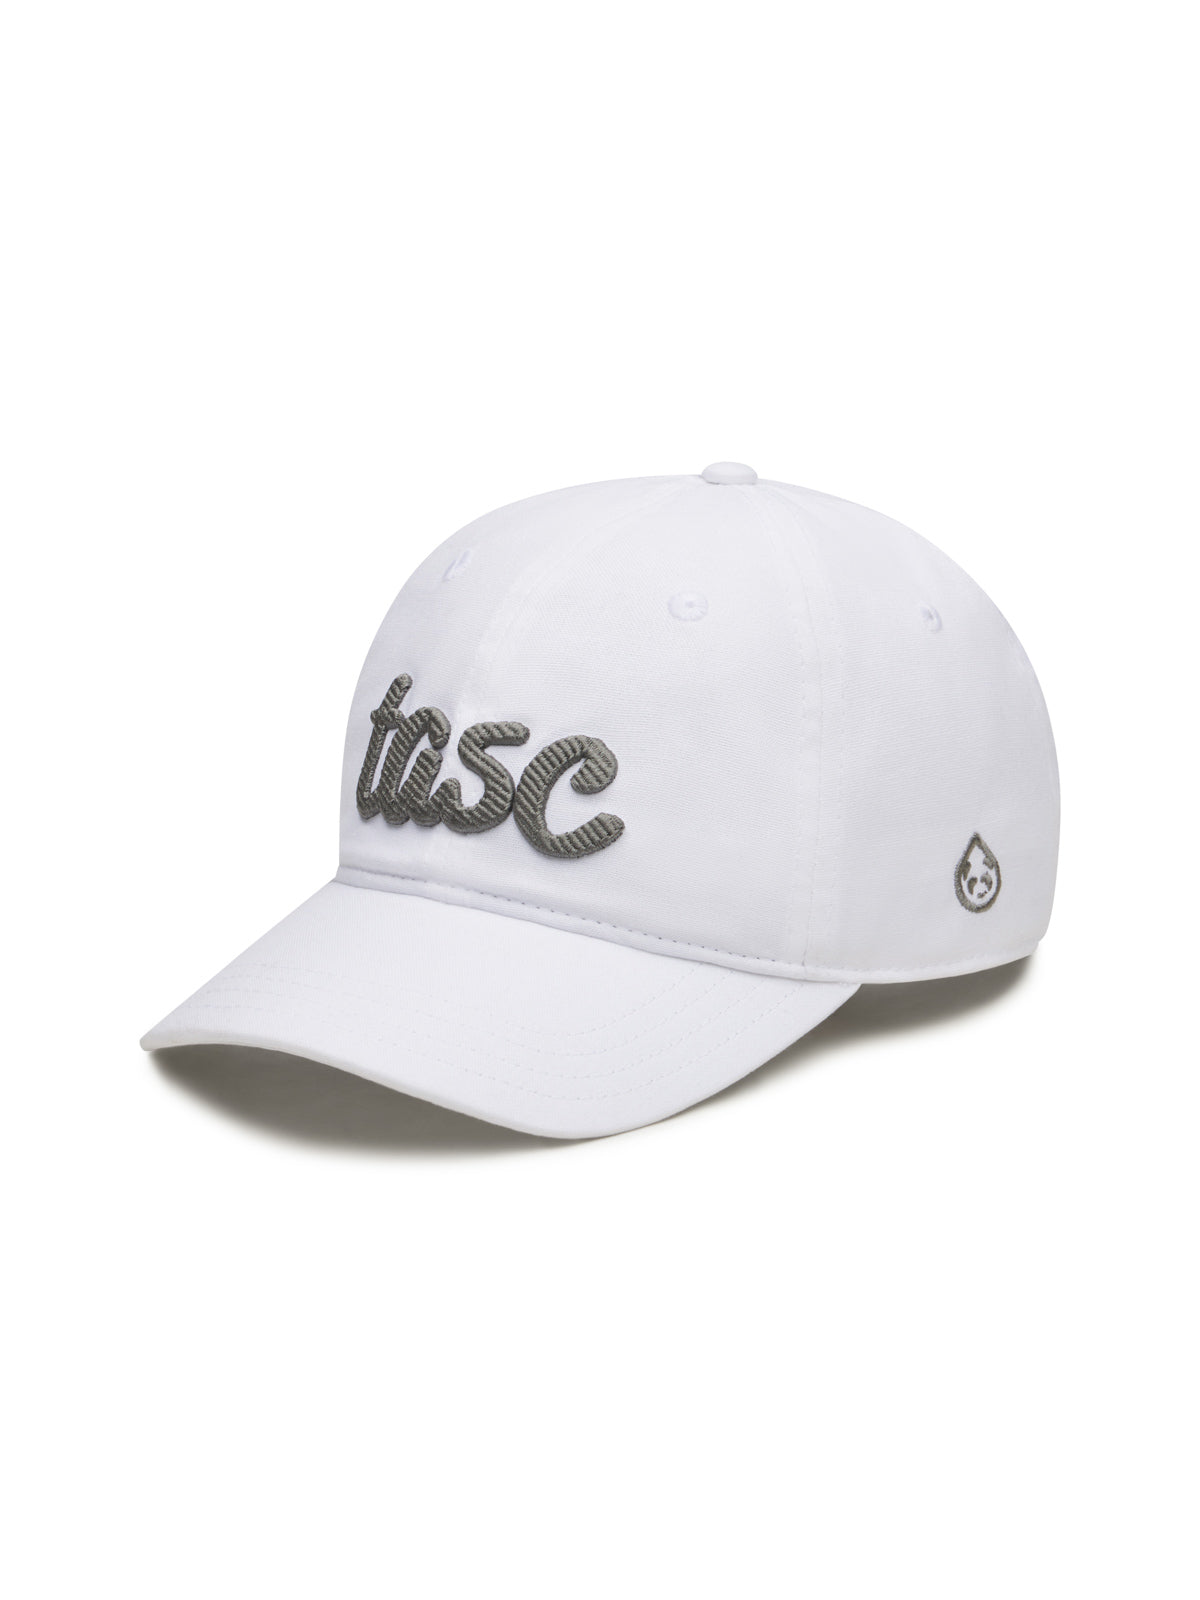 TASC Script Hat - tasc Performance (White)